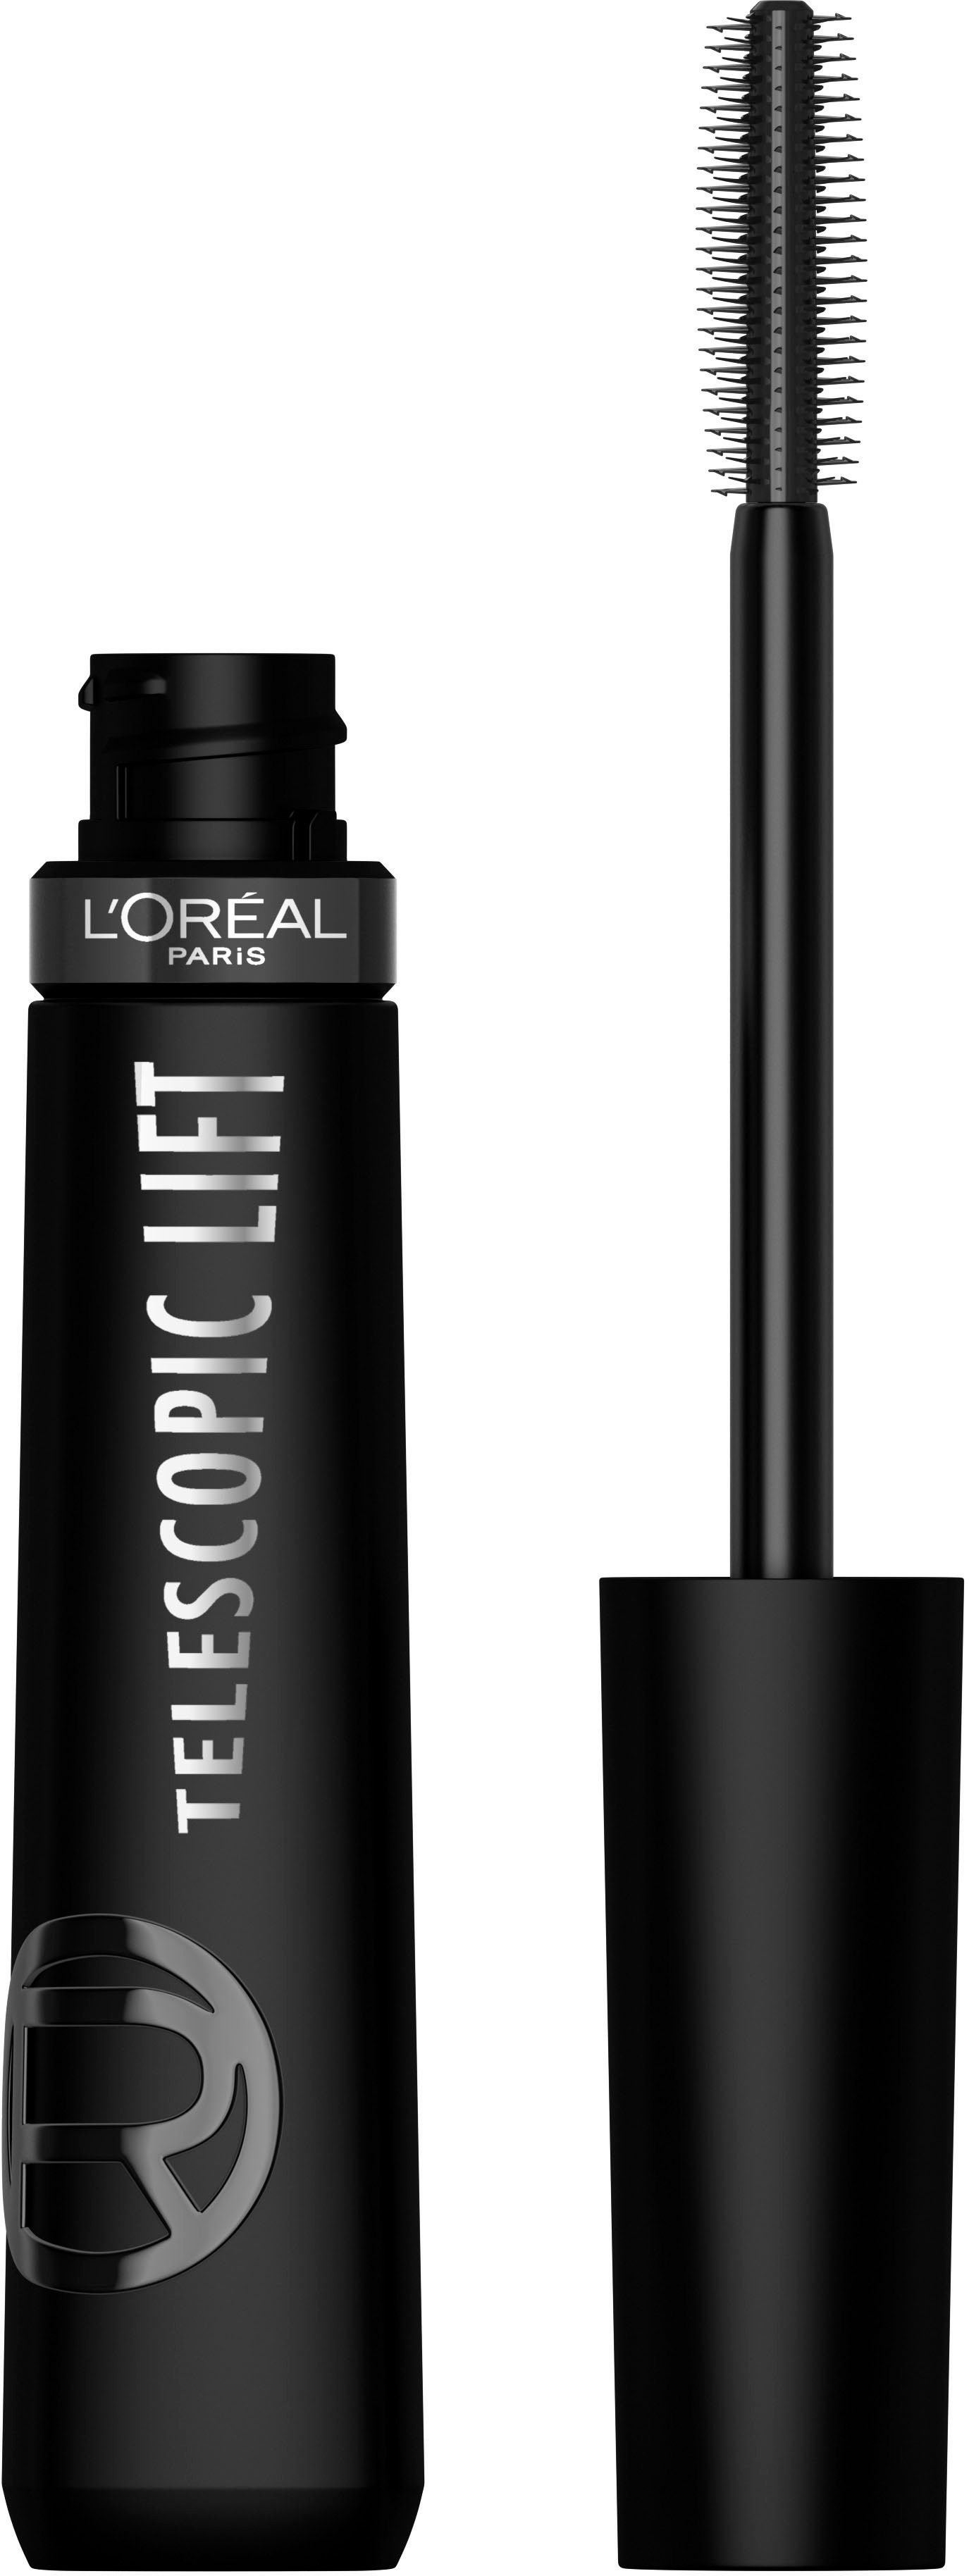 L'ORÉAL PARIS Mascara L'Oréal Paris Telescopic Lift Extra Black Mascara, Wimperntusche mit Lifting-Effekt